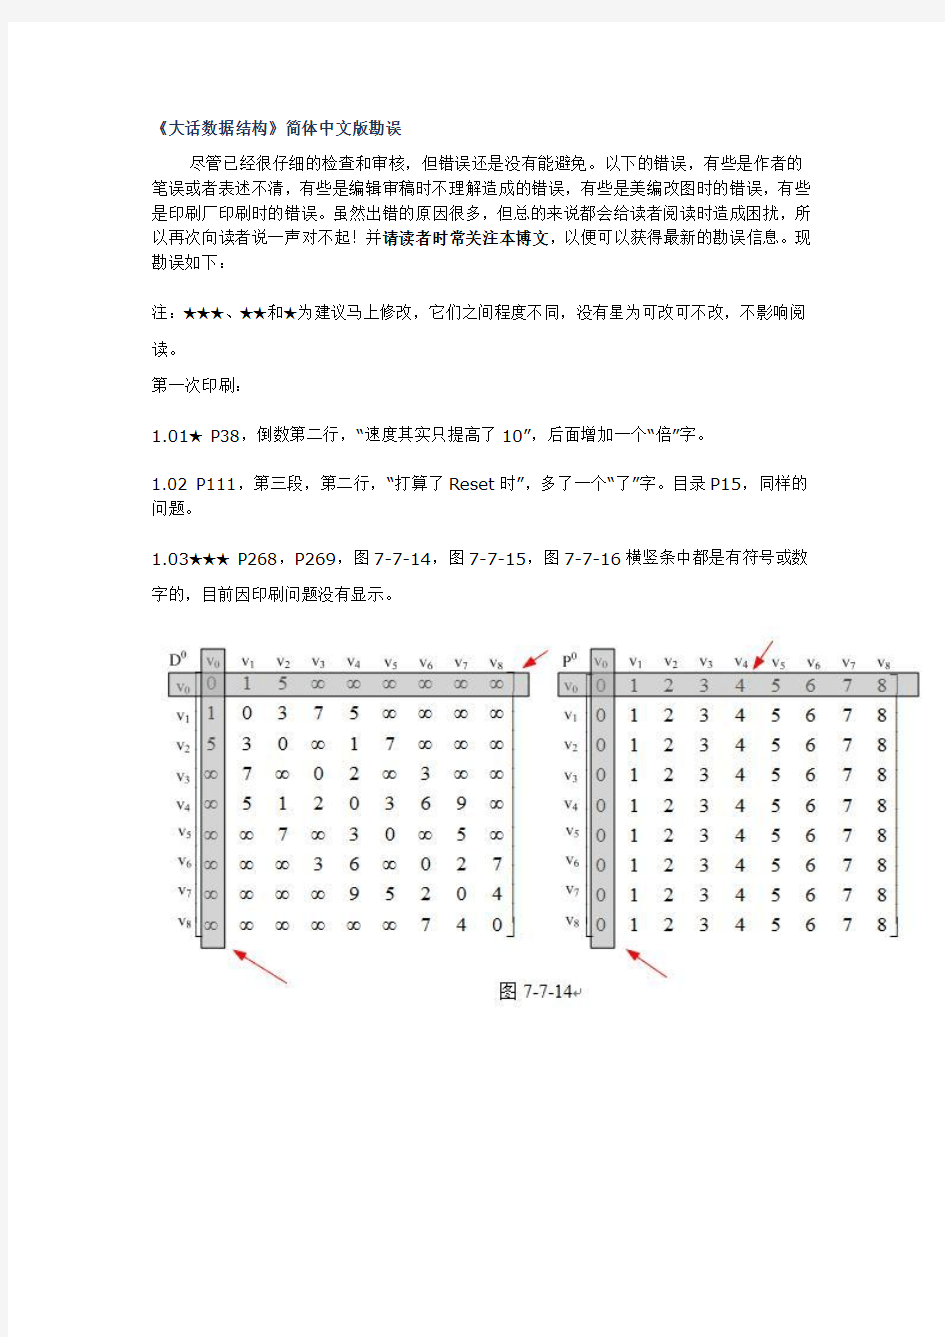 《大话数据结构》简体中文版勘误